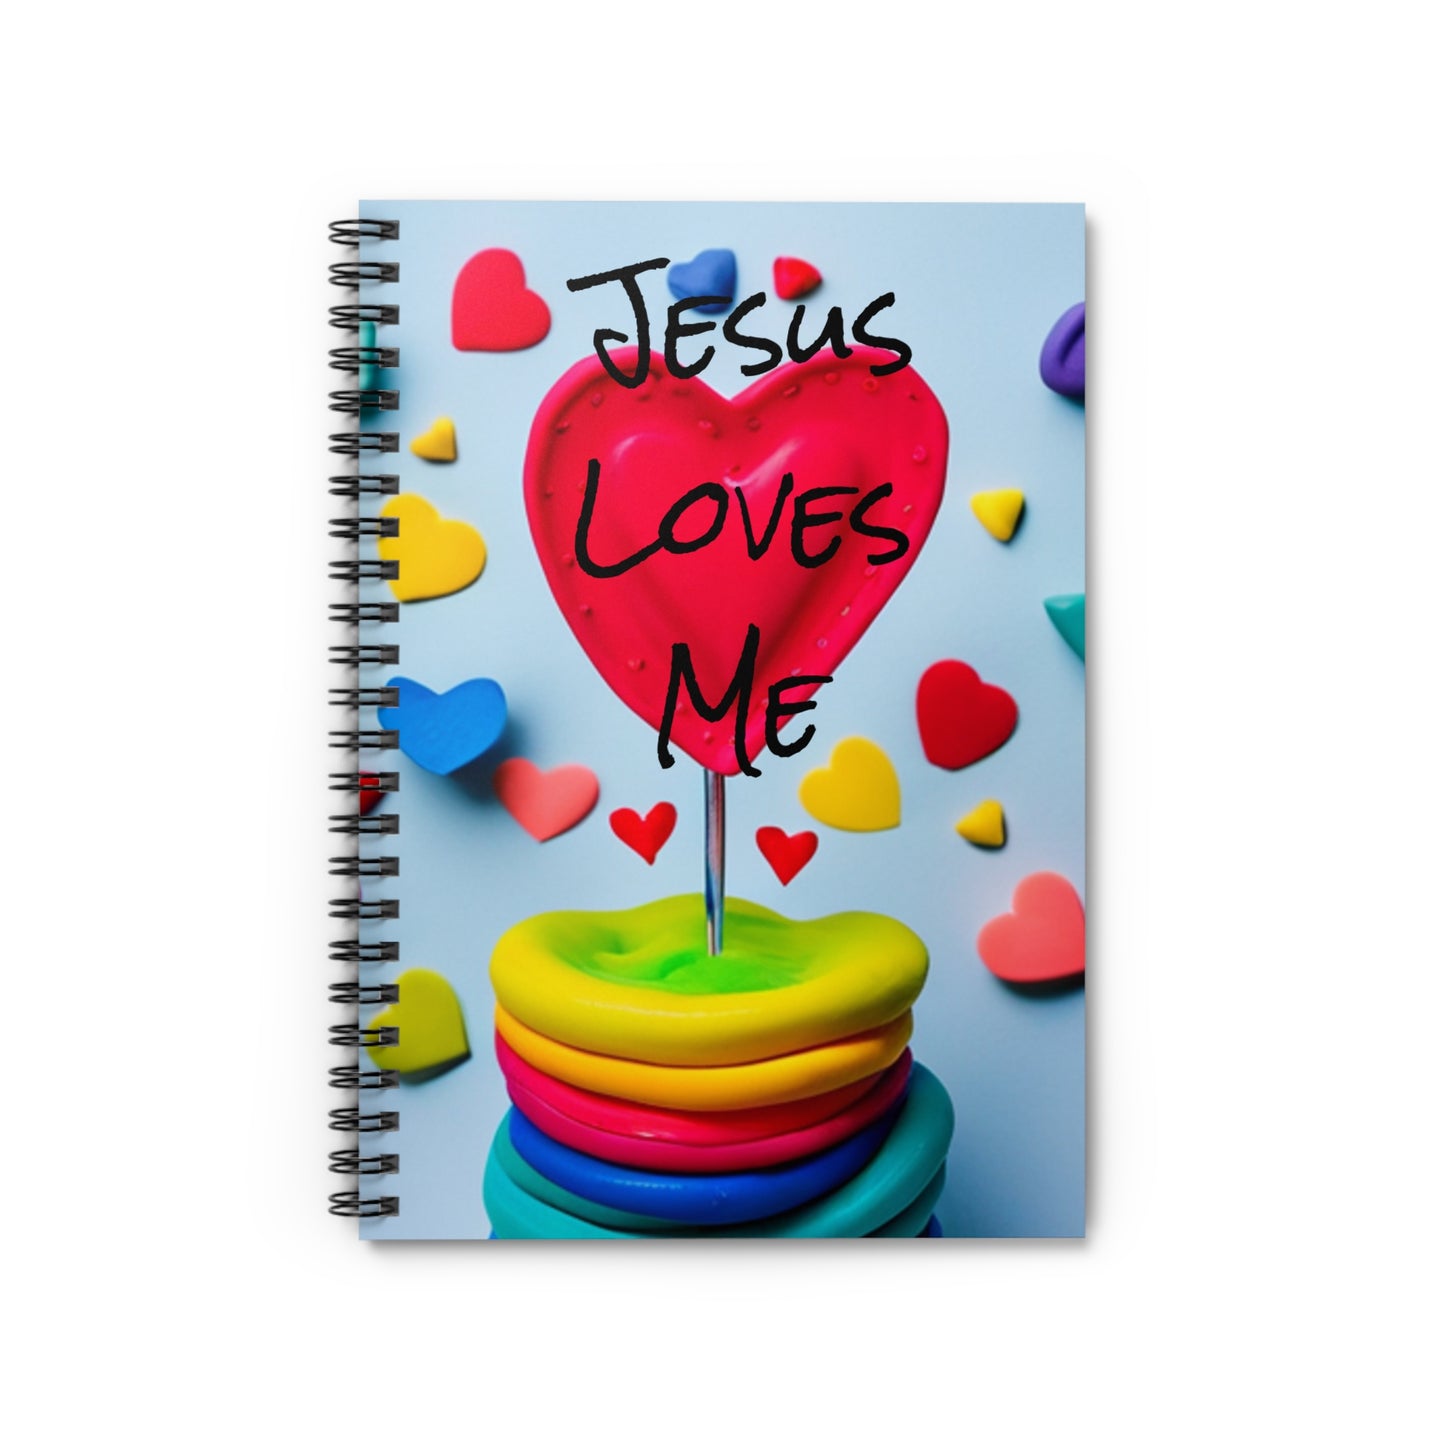 Jesus Loves Me Spiral Notebook - Ruled Line